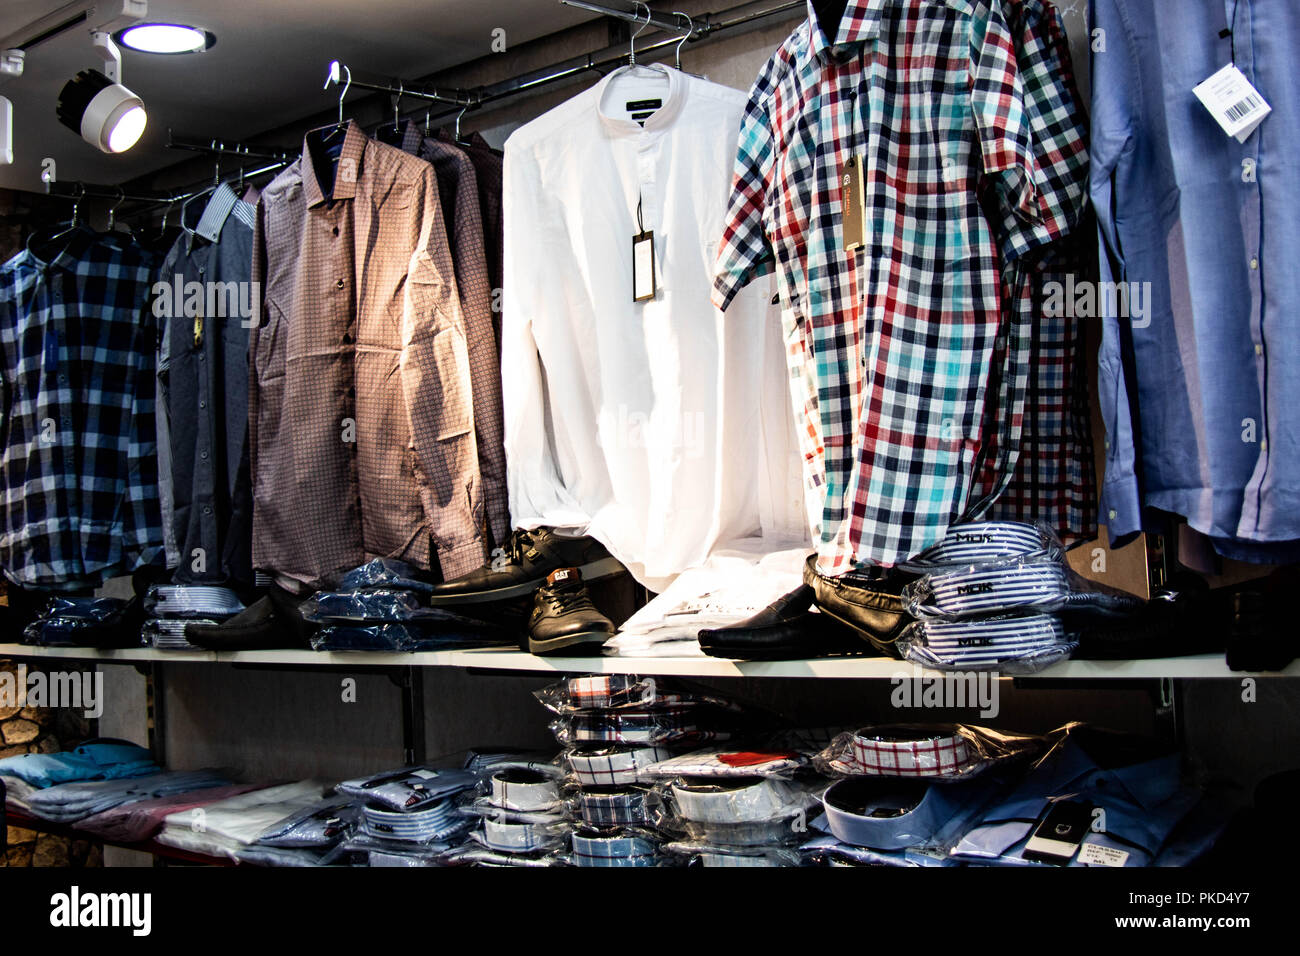 Boutique de vêtements homme femme fashion Shopping touna house Photo Stock  - Alamy